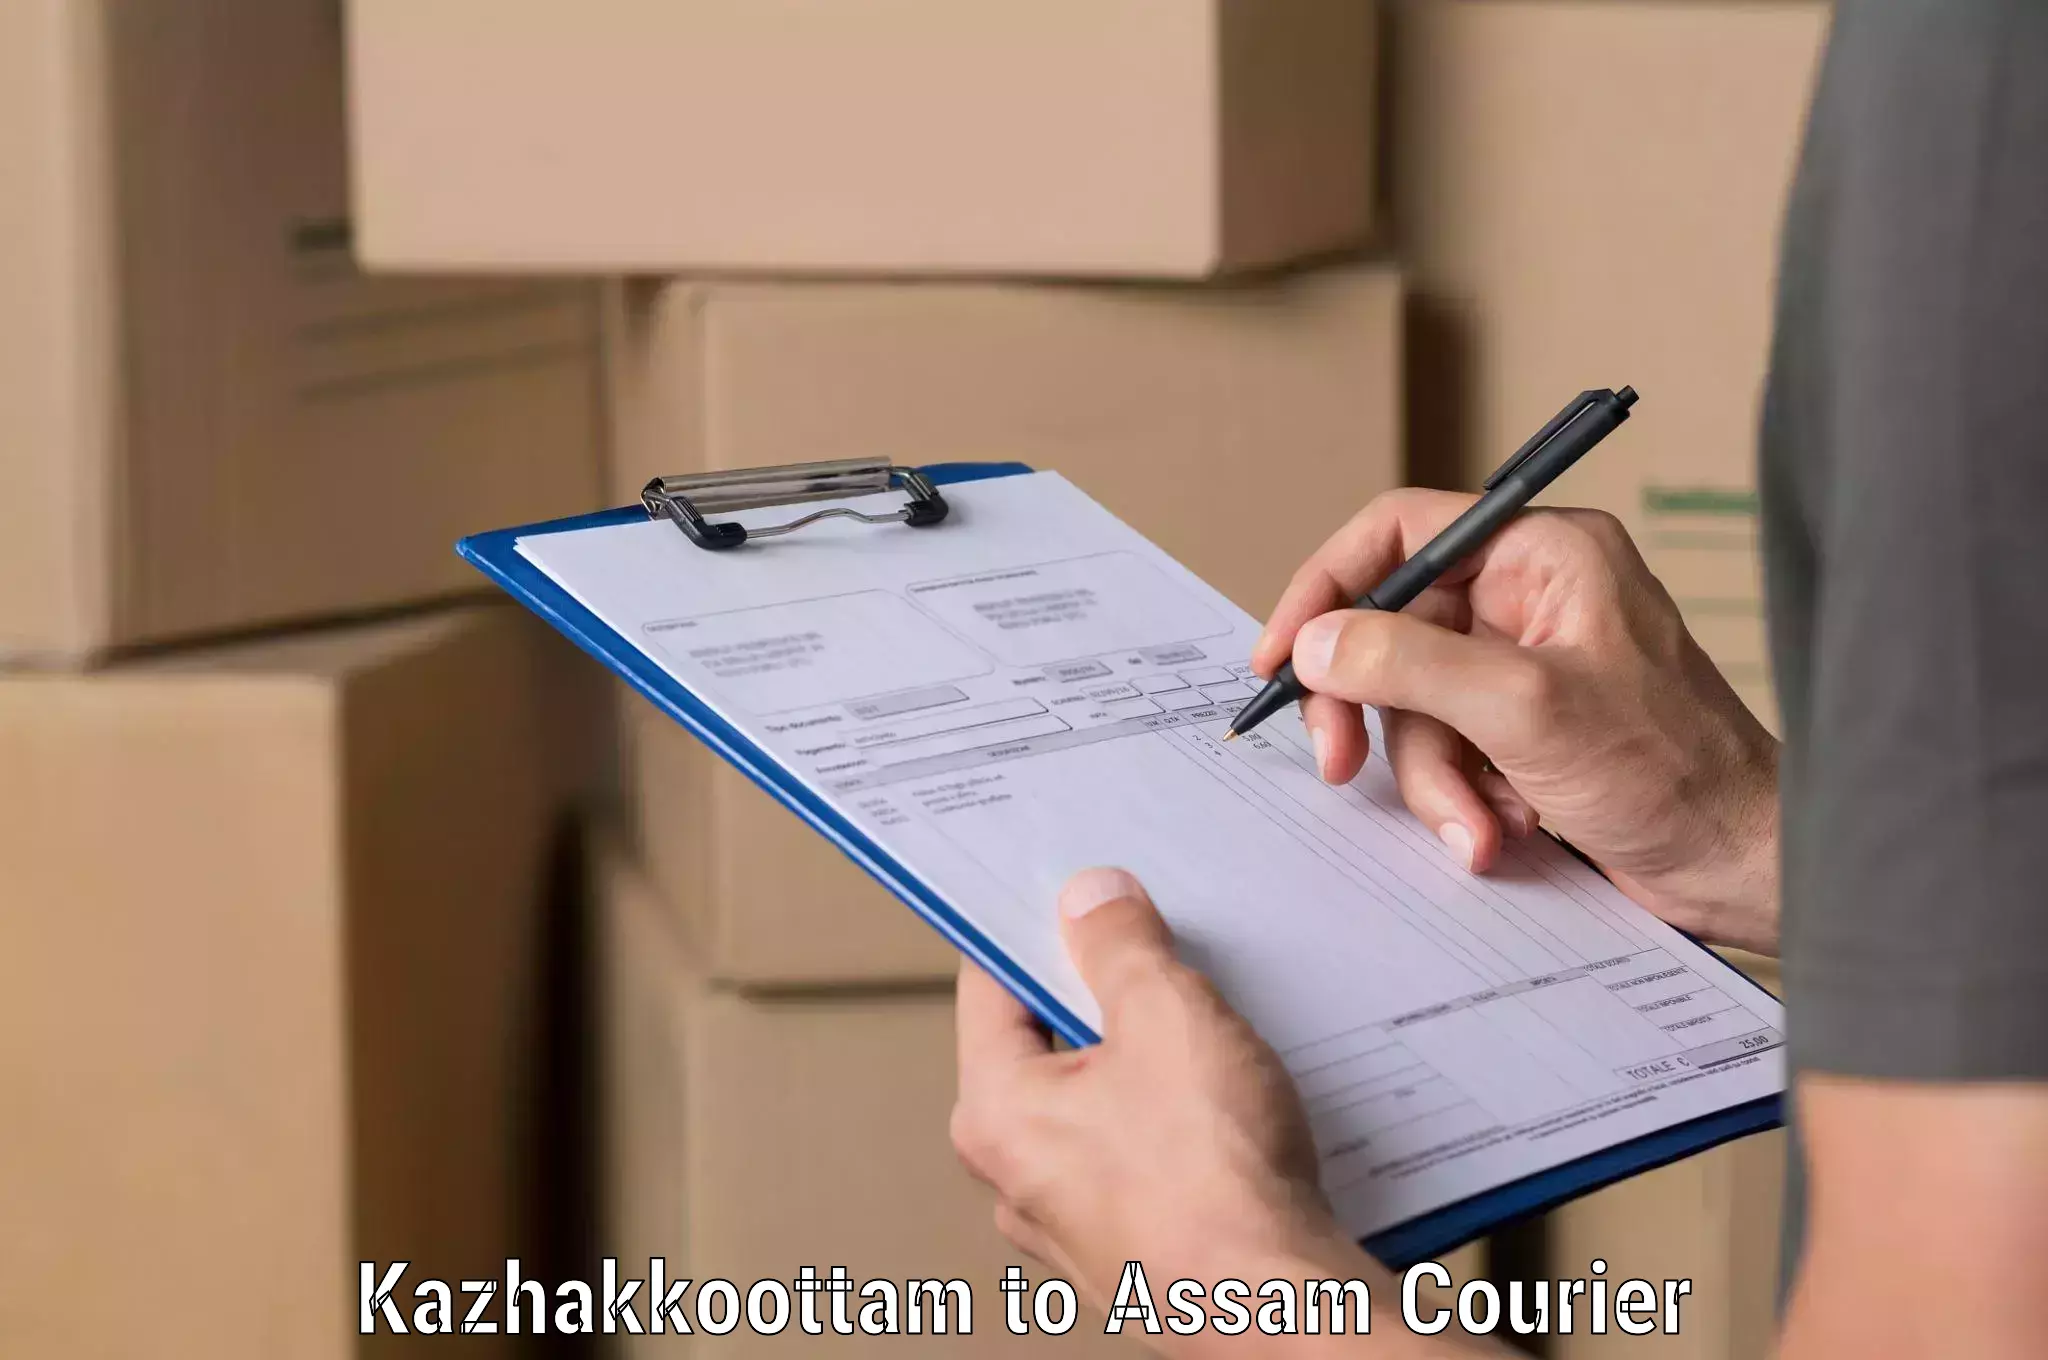 Professional courier services Kazhakkoottam to Kalaigaon